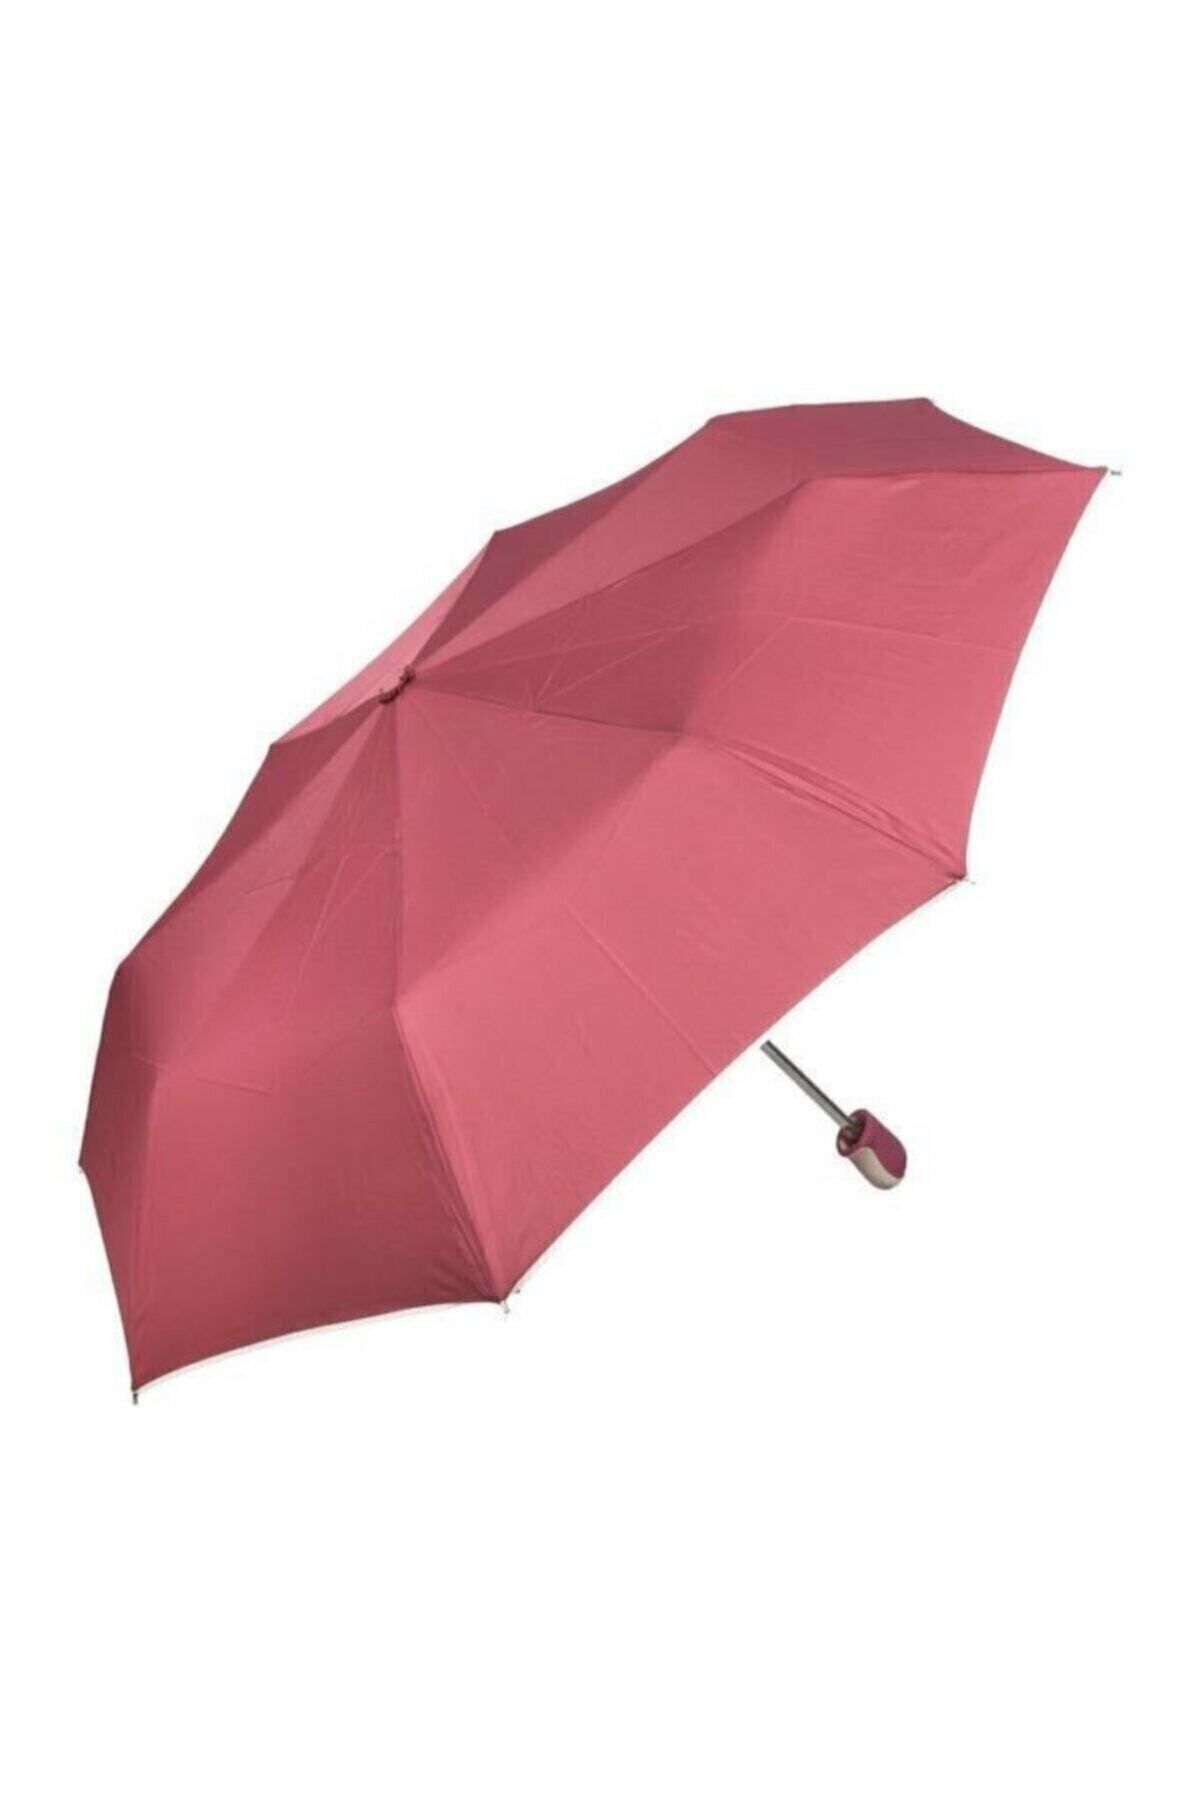 snotline -april Kadın Şemsiye Mini Boy 8 Telli Manuel Açılır Kapanır Lüx Şemsiye